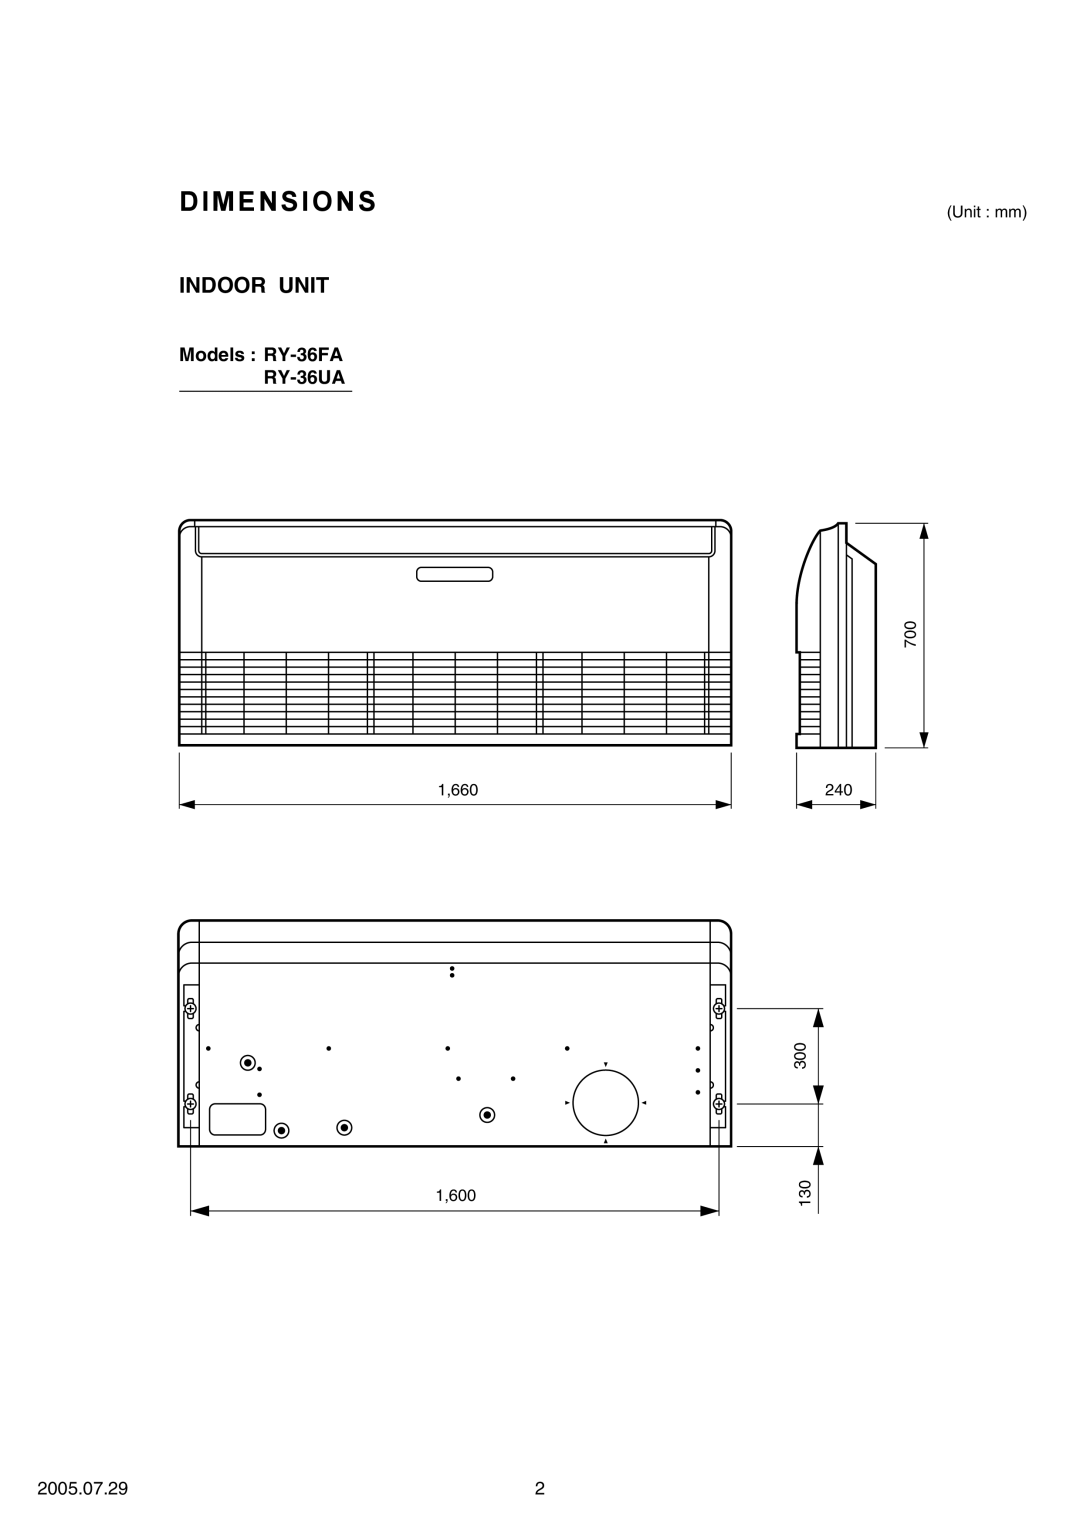 Fujitsu RO-36UA, RO-36FA specifications Dimensions, Indoor Unit, Models RY-36FA RY-36UA, 2005.07.29 